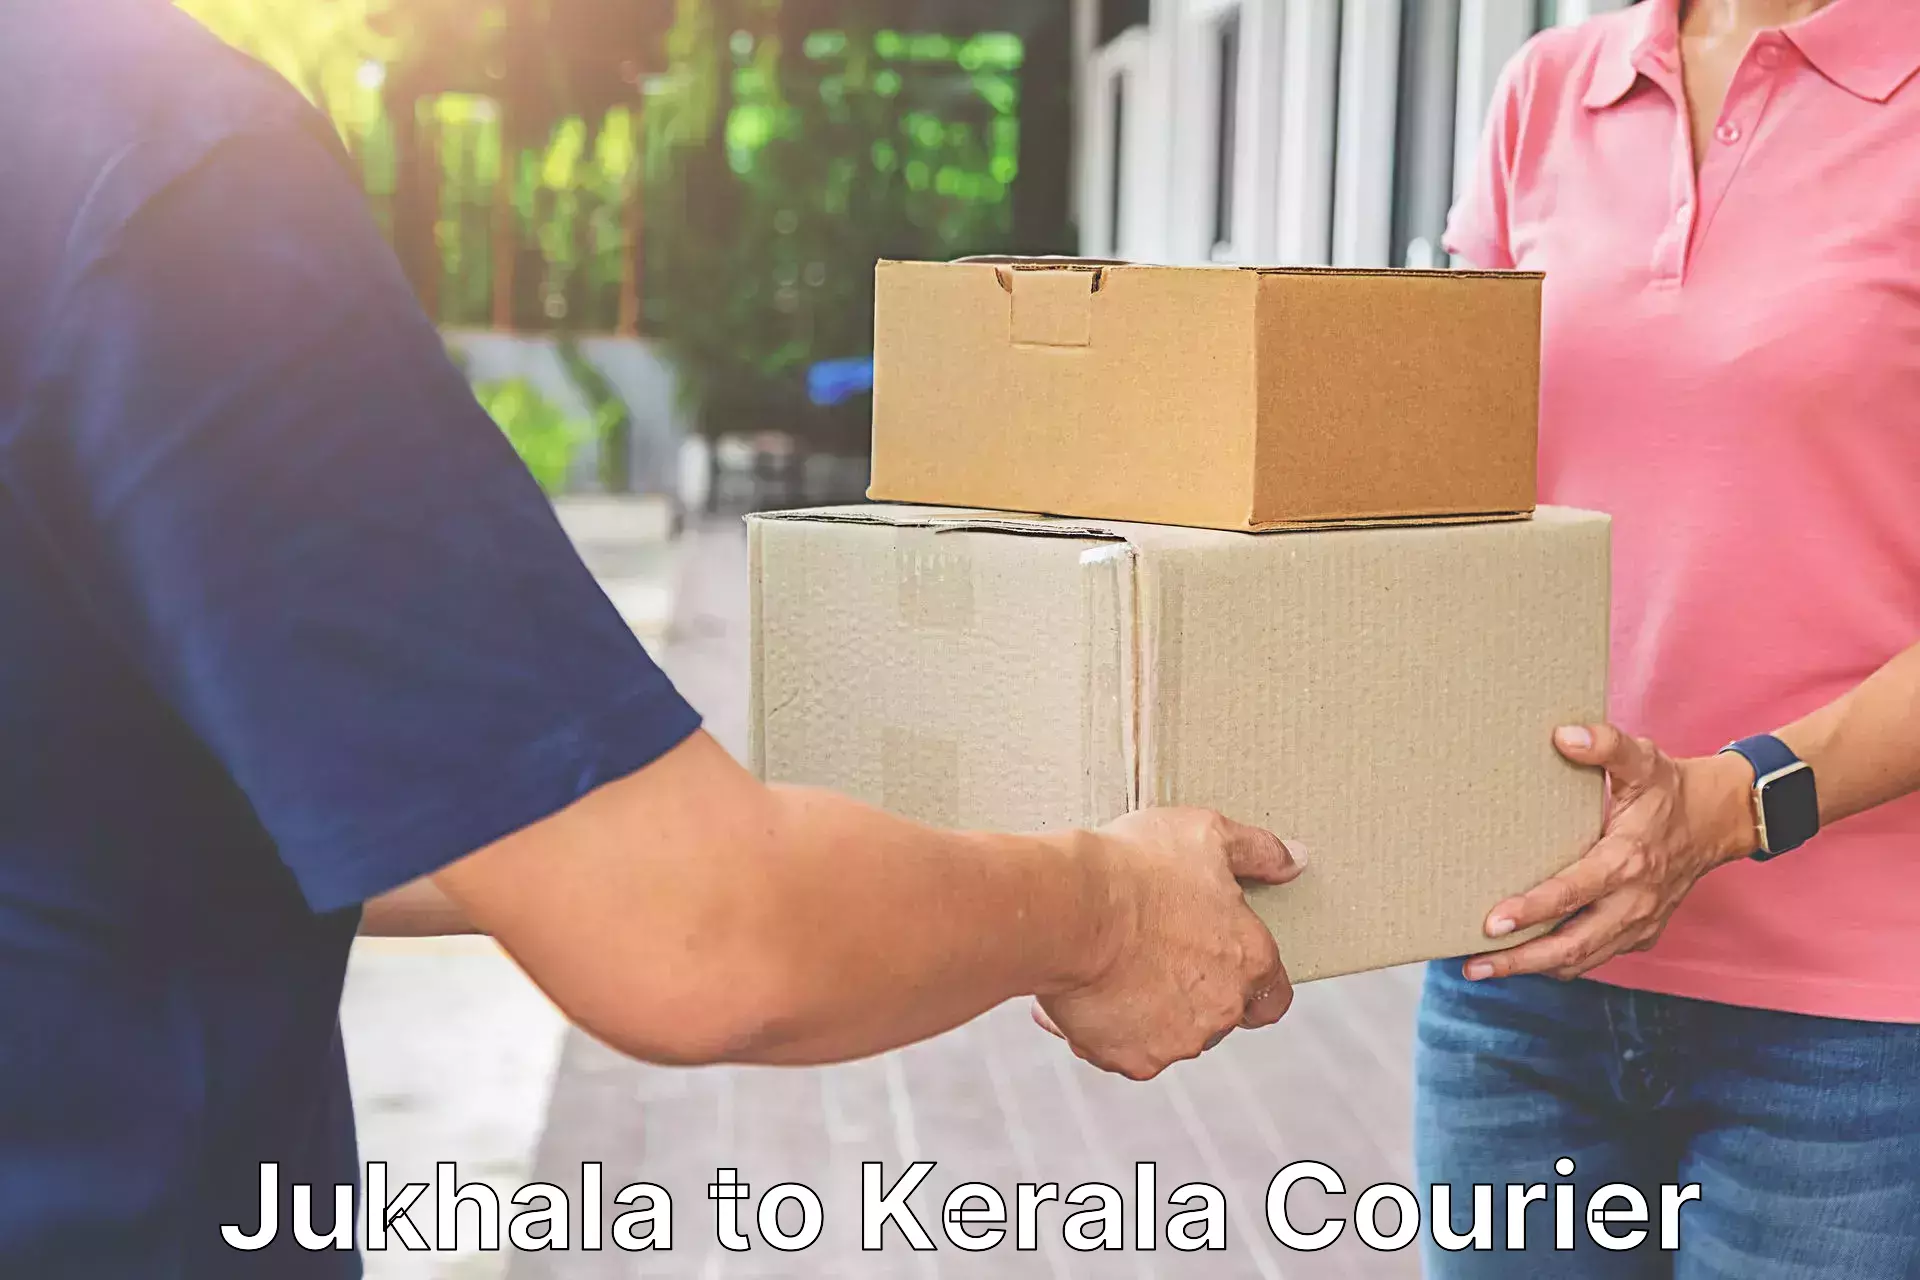 Affordable parcel rates Jukhala to Mahatma Gandhi University Kottayam